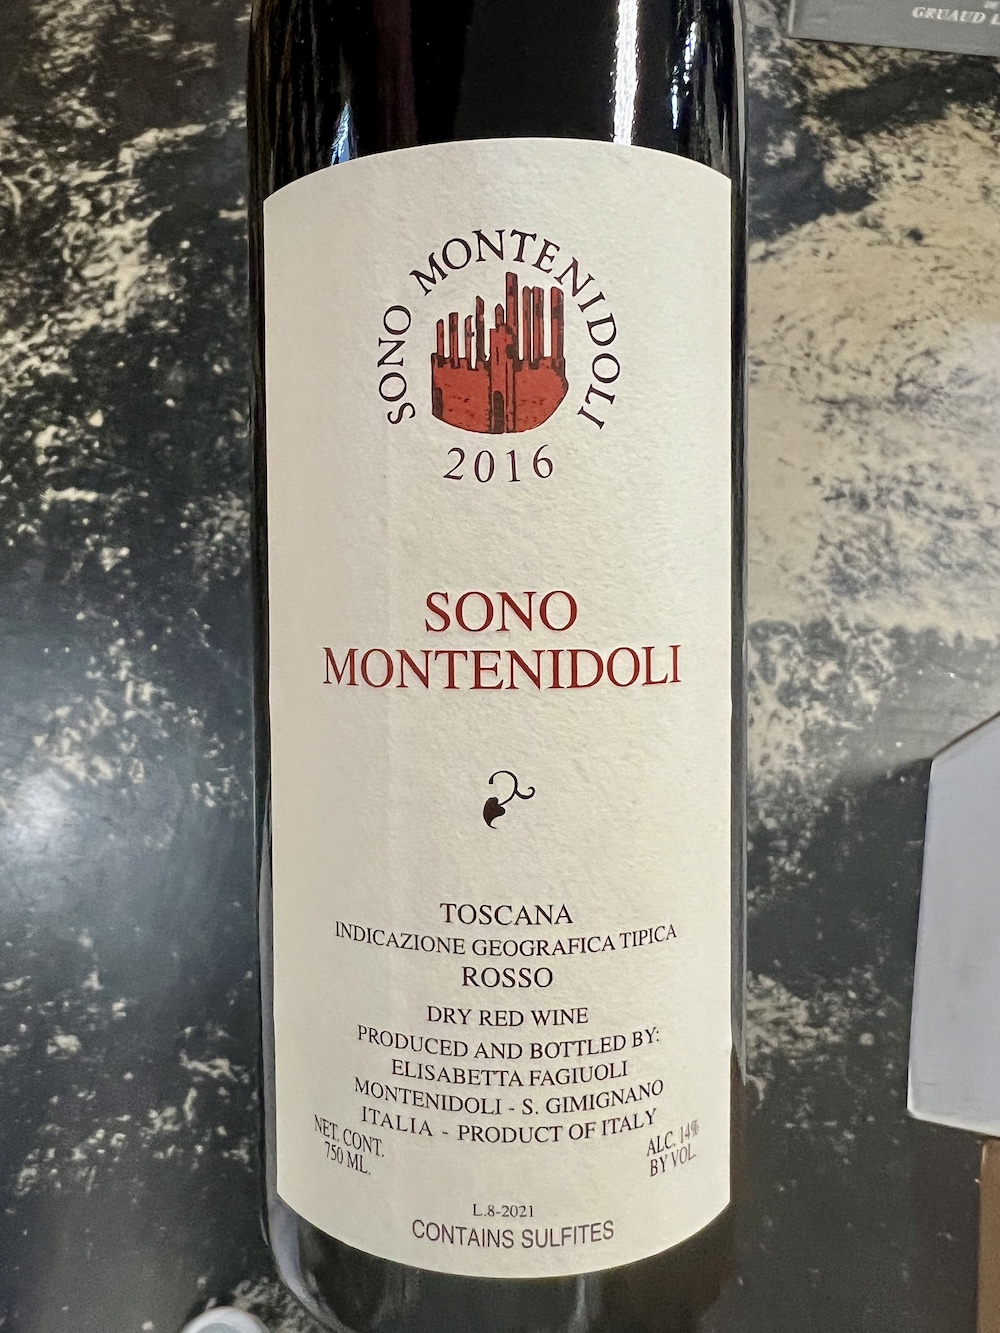 Montenidoli - Sono Montenidoli 2016 (750)